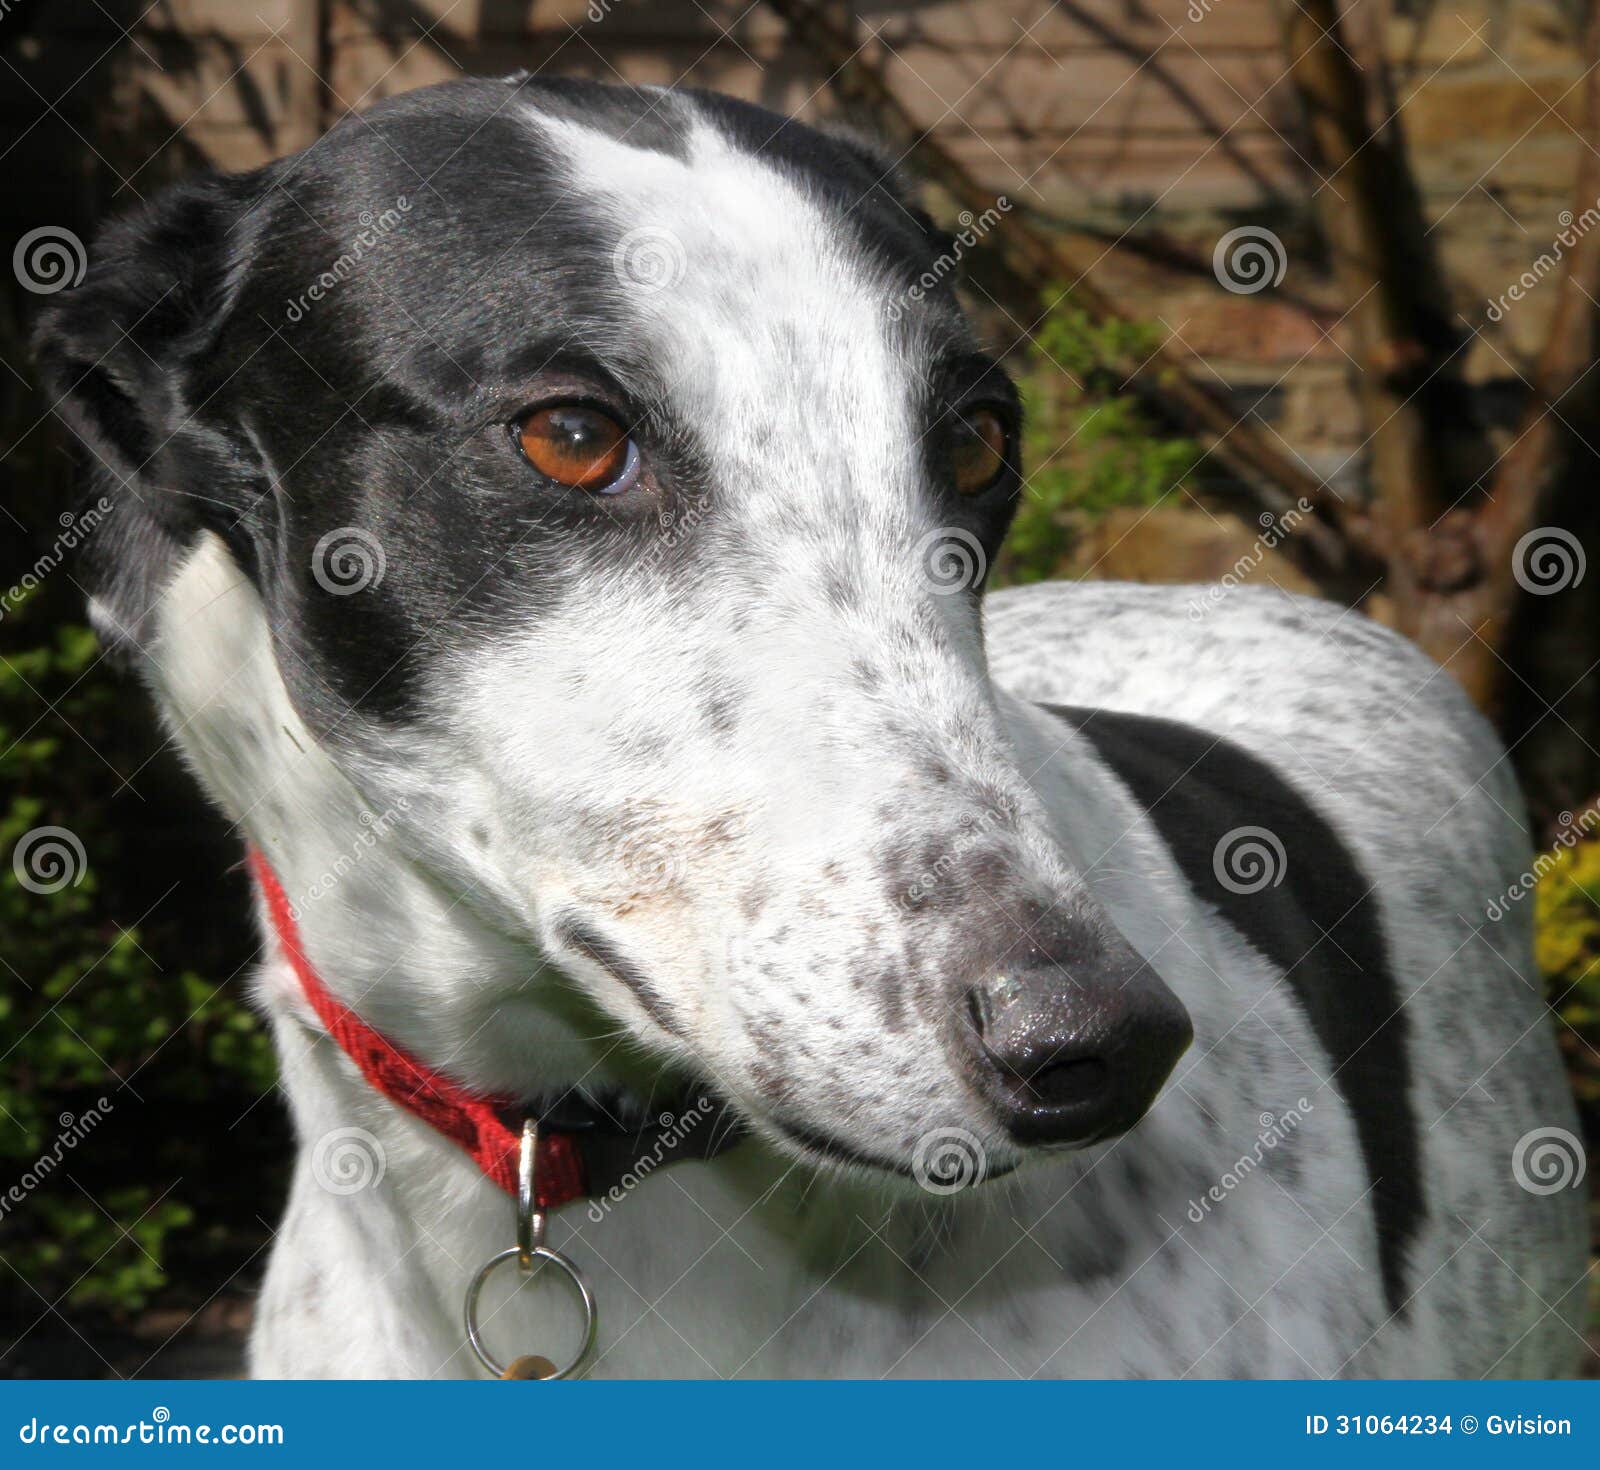 Greyhound Dog Stock Photo Image Of Pedigree Head Rescuedog 31064234